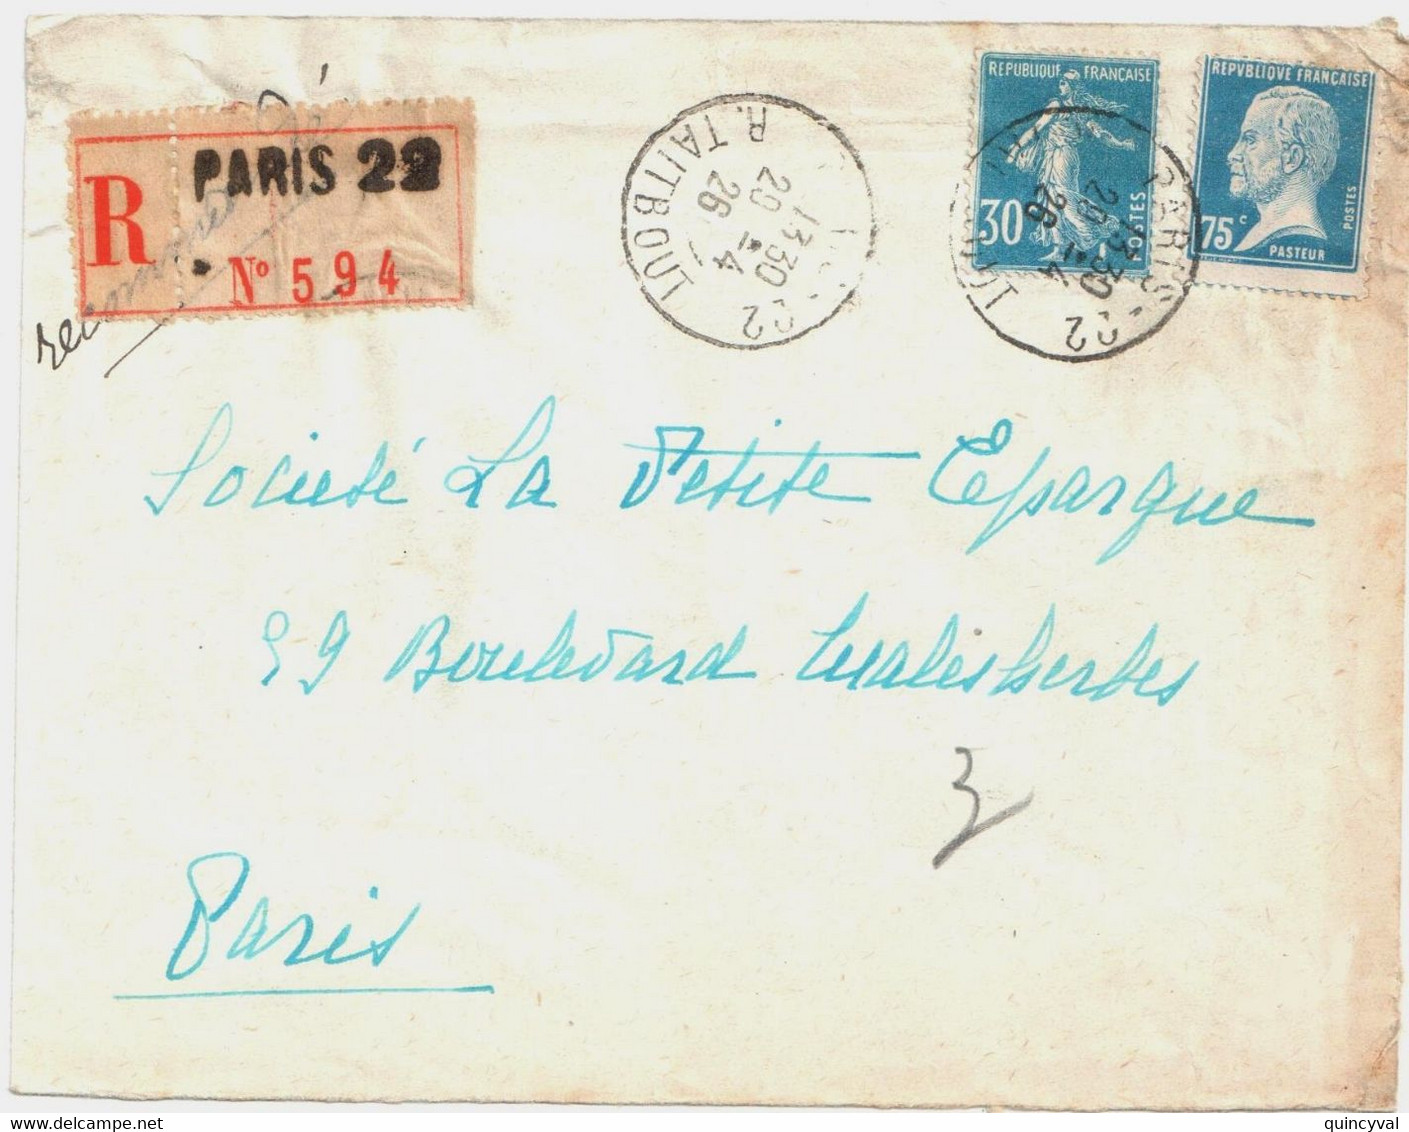 PARIS 22 R Taitbout Lettre Recommandée 30c Semeuse Bleu 75c Pasteur Piquage Décalé Yv 192 177 Ob 29 4 1926 - Covers & Documents